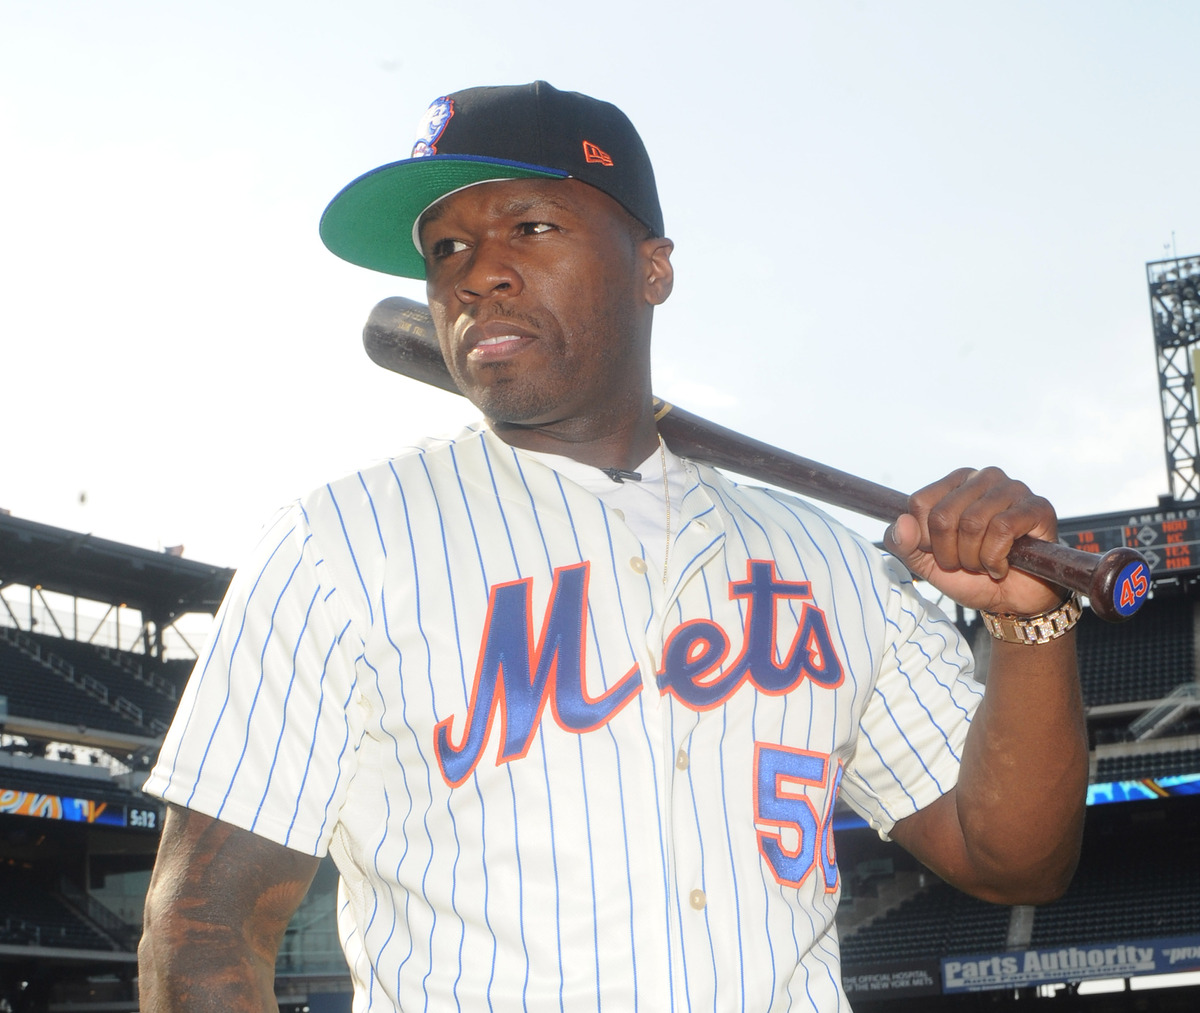 50 Cent опозорился на игре "Метс"